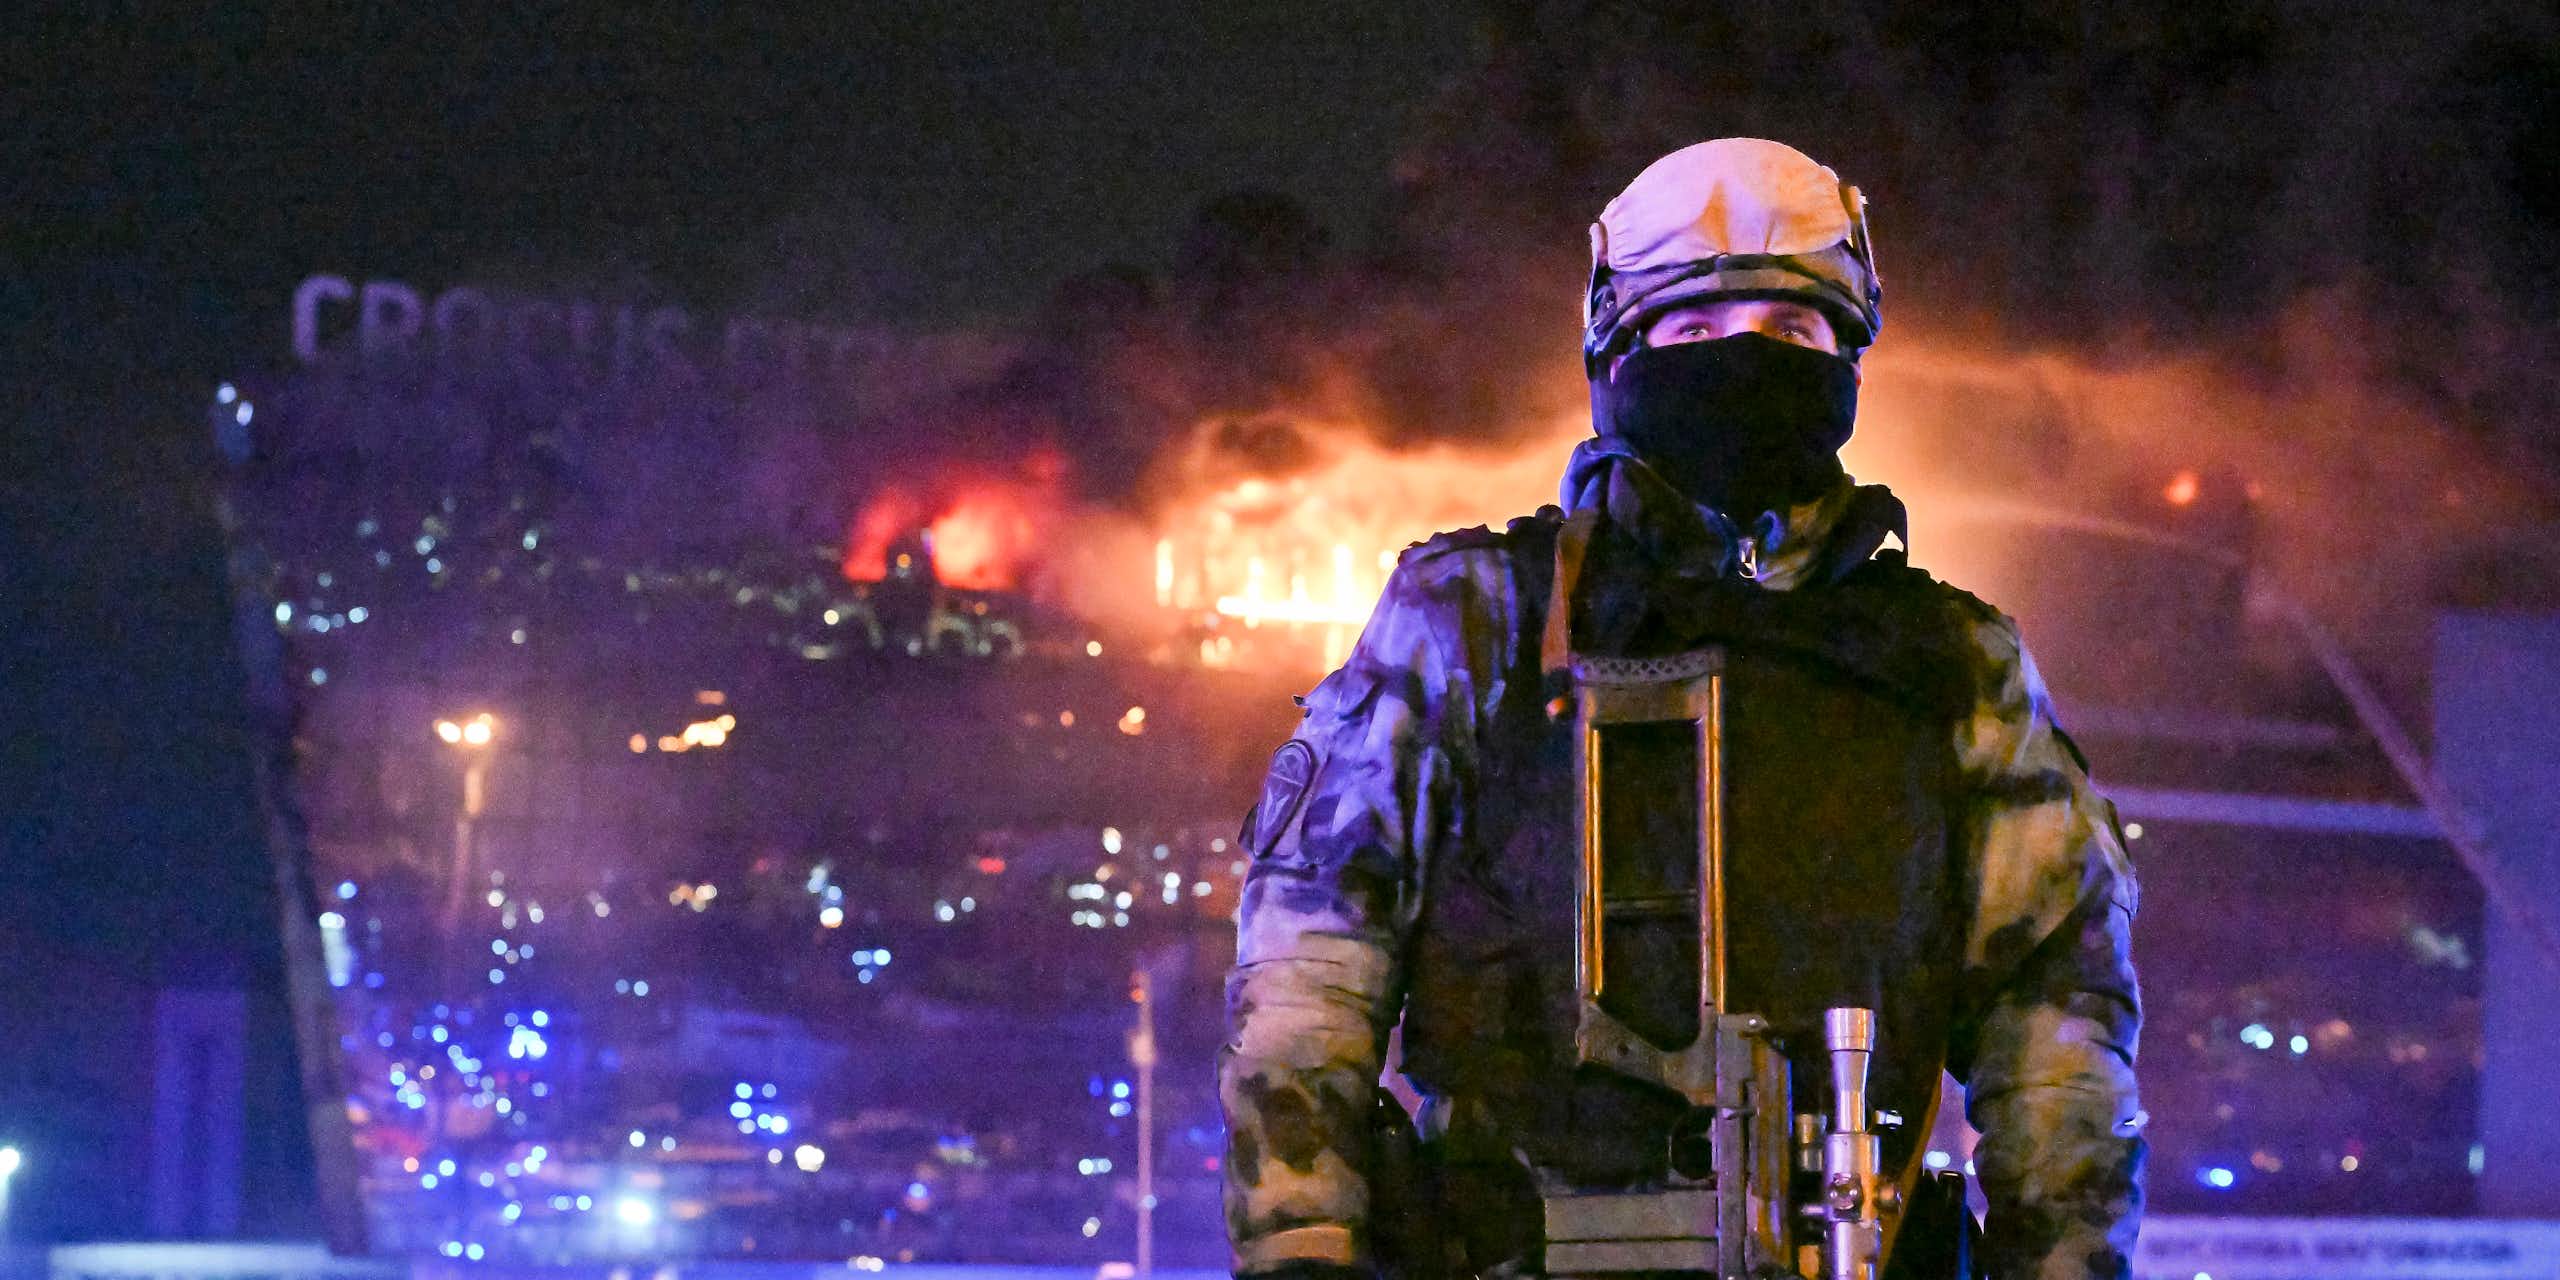 Un soldat se trouve au premier plan de la photo tandis qu'un bâtiment en flammes se trouve à l'arrière-plan.